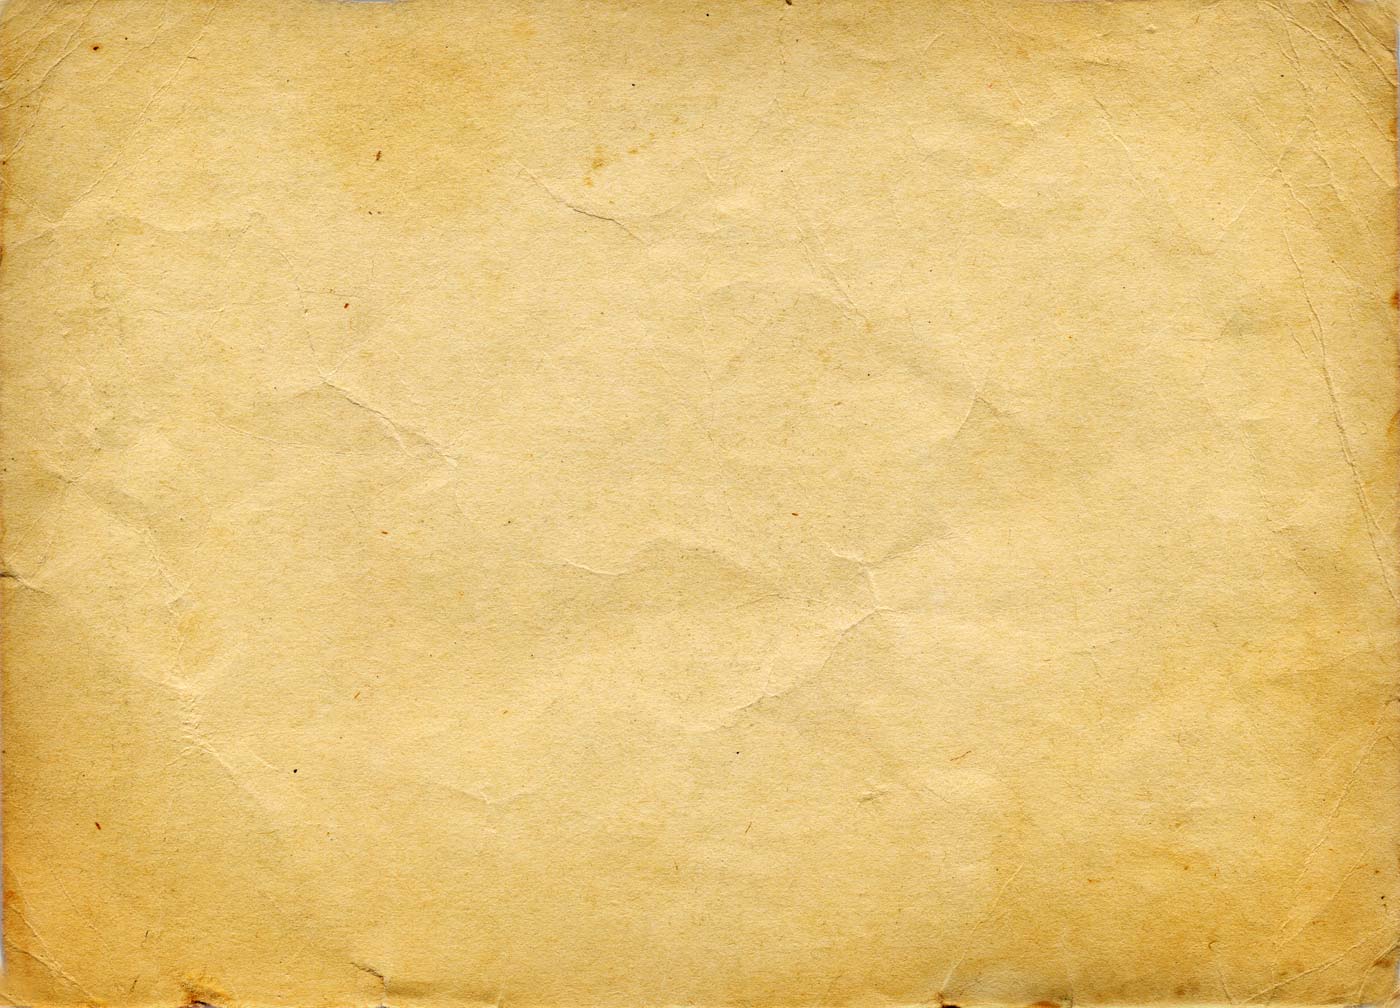 Vintage Paper Background Image